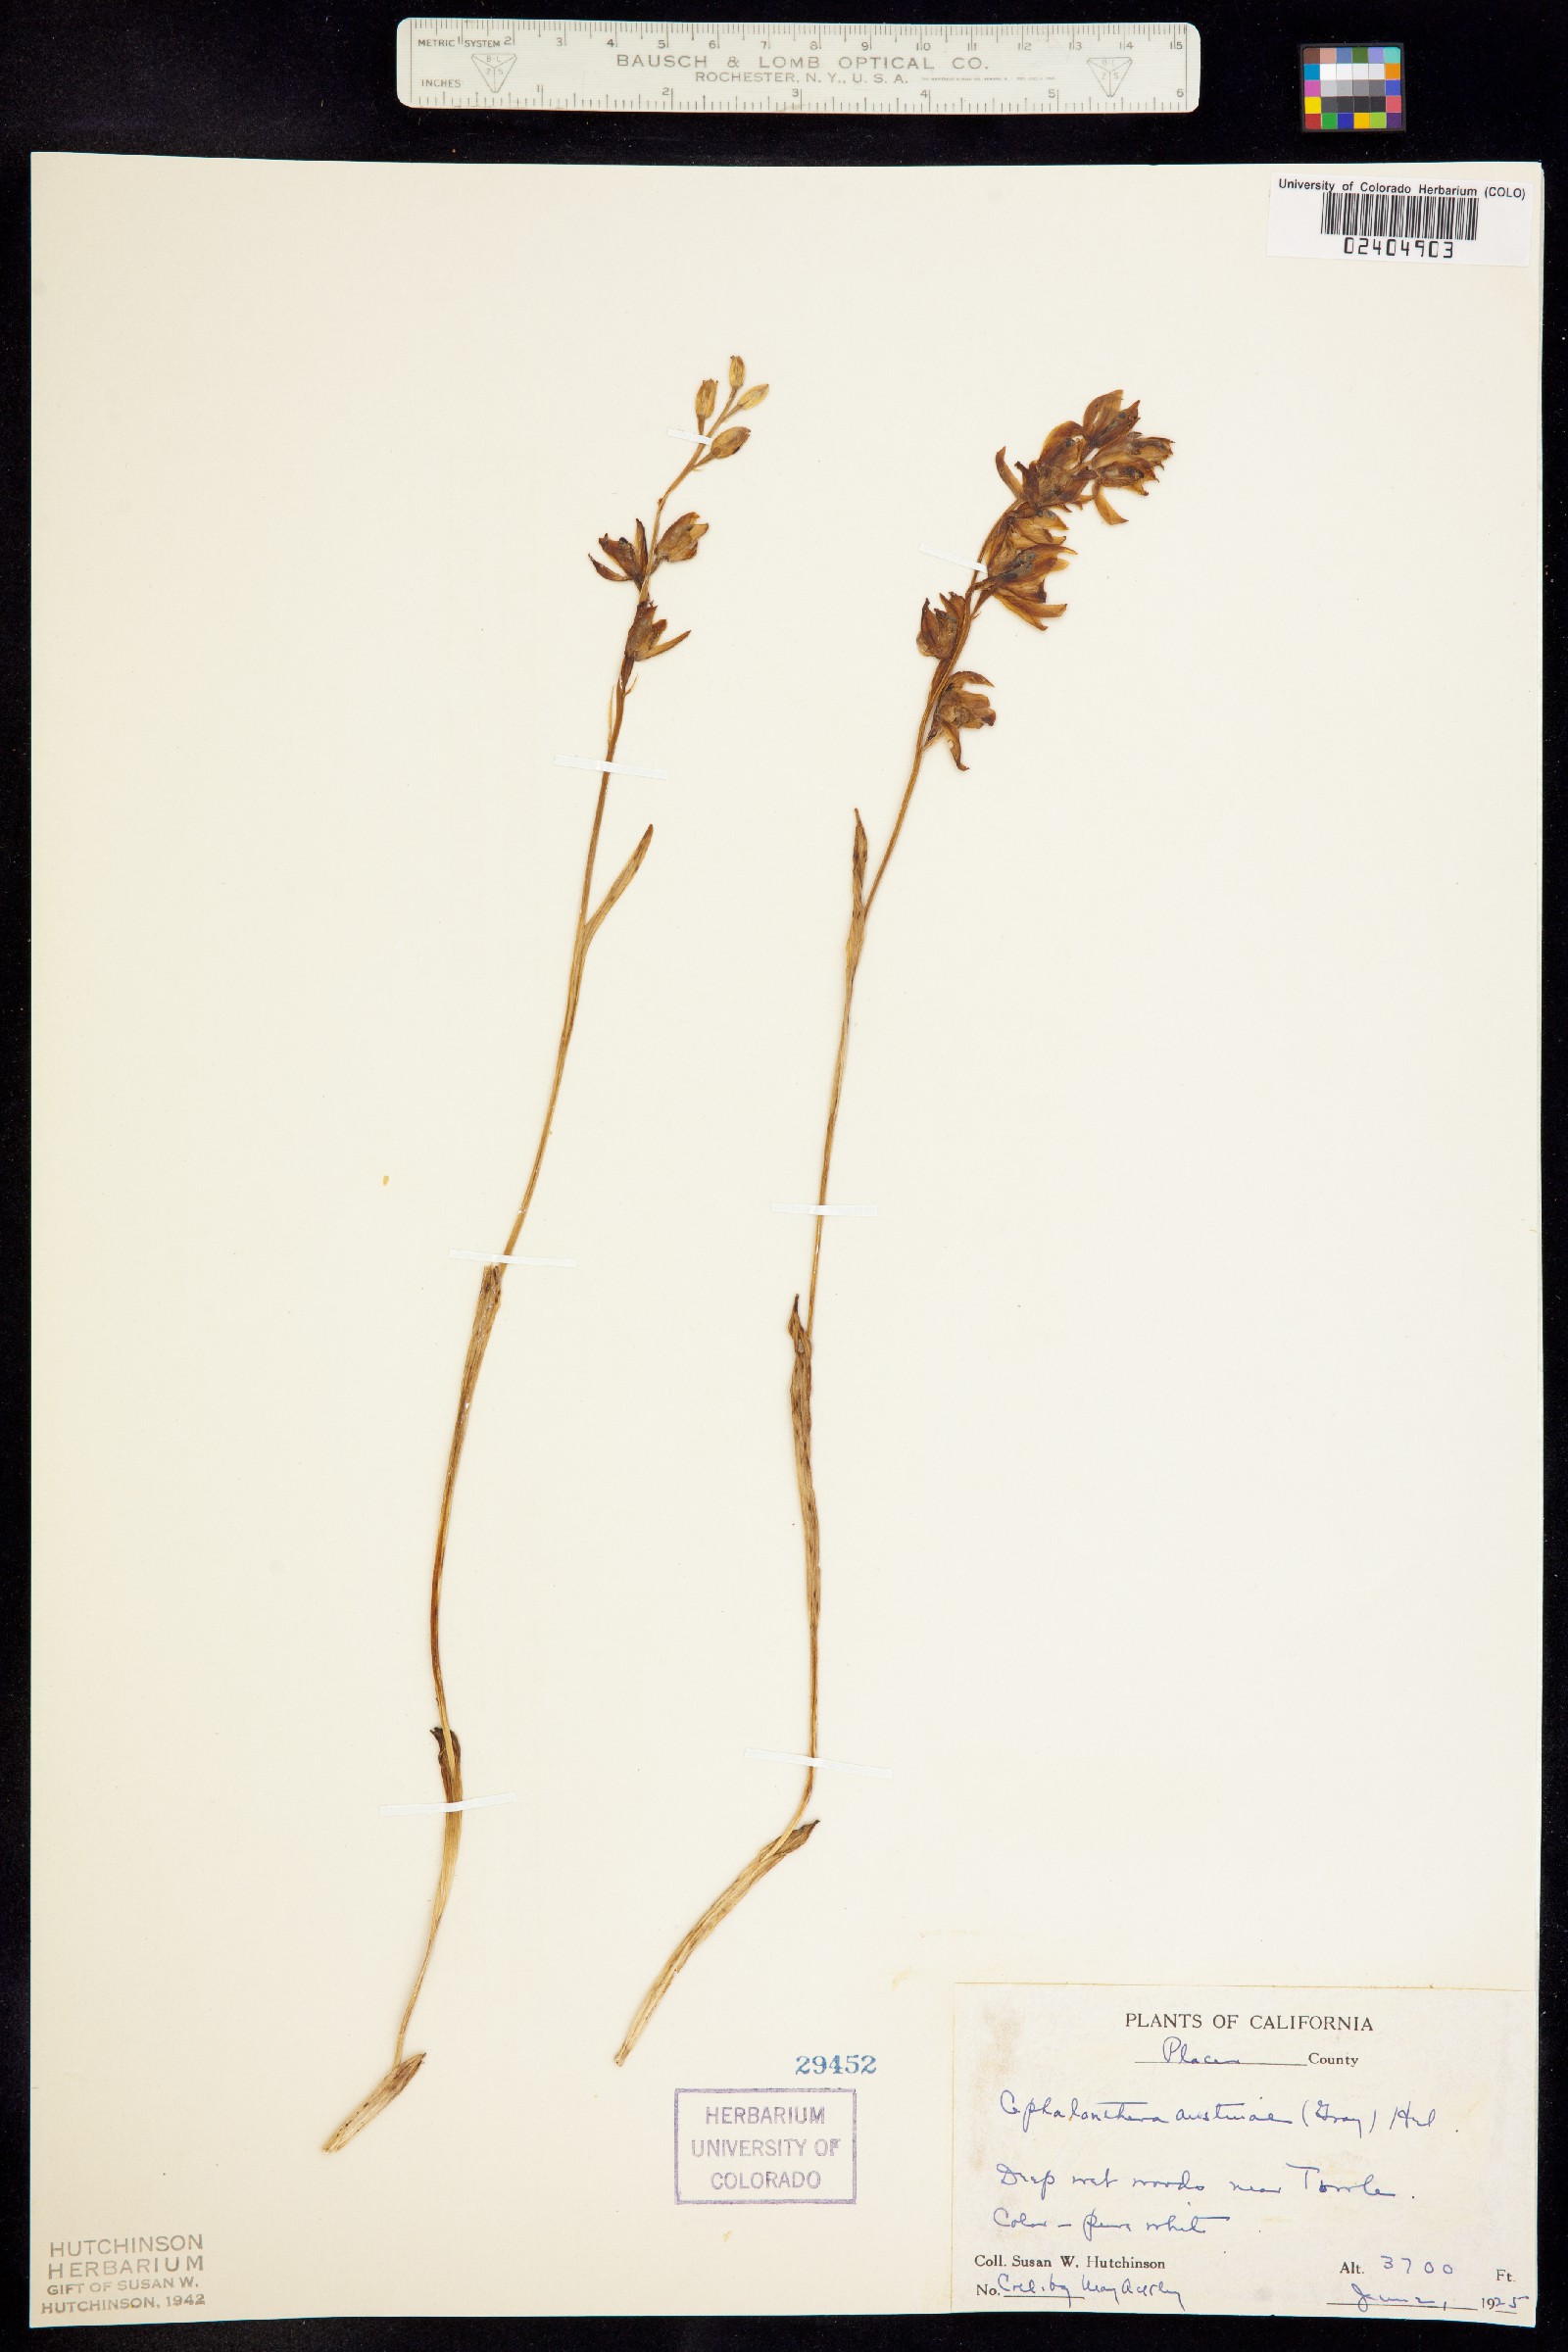 Cephalanthera image